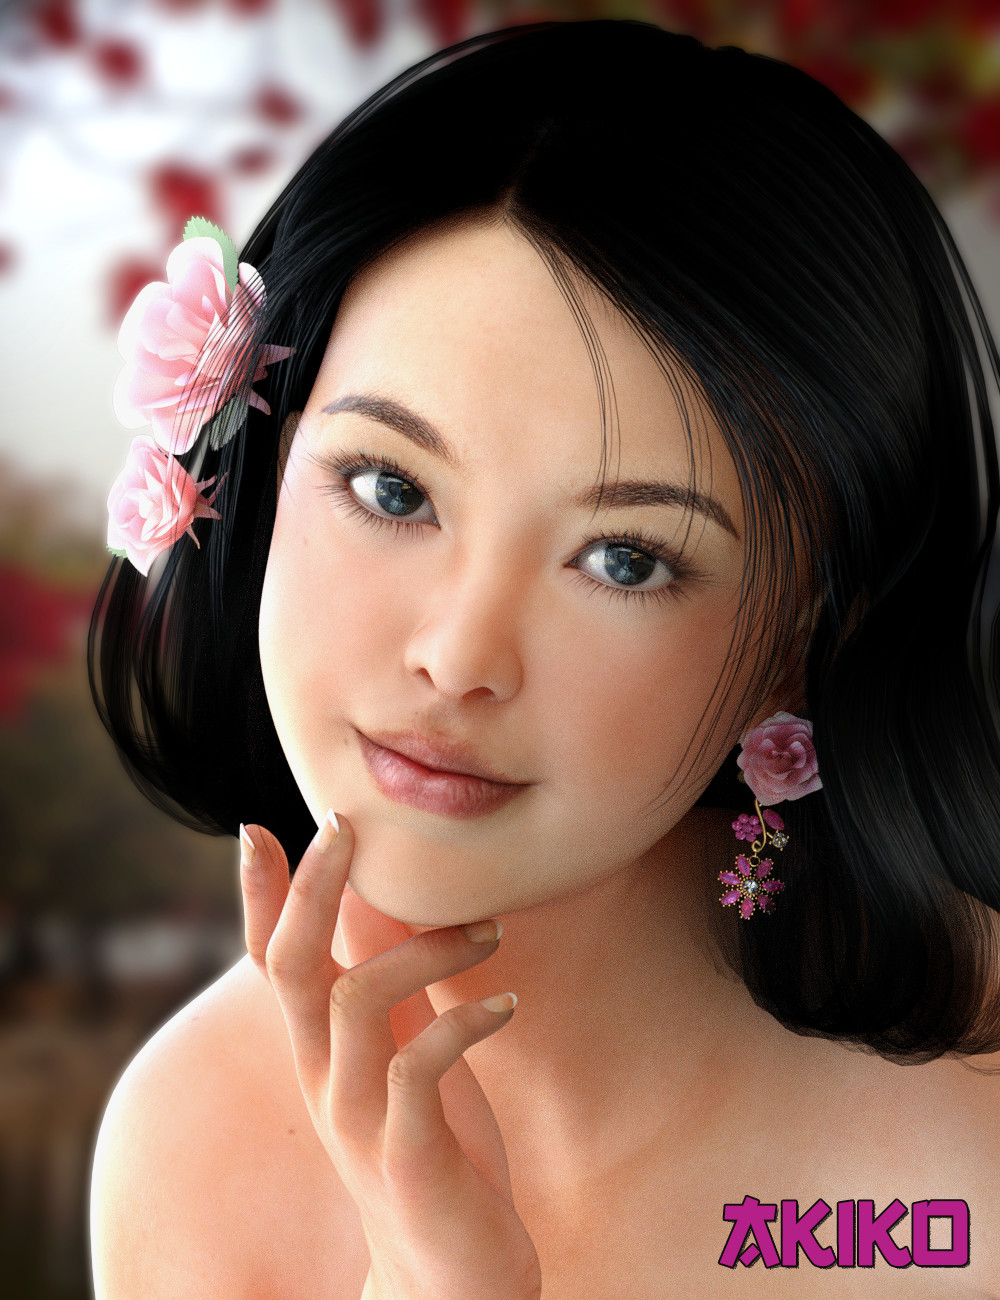 Akiko for Mei Lin 7 by: Virtual_World, 3D Models by Daz 3D